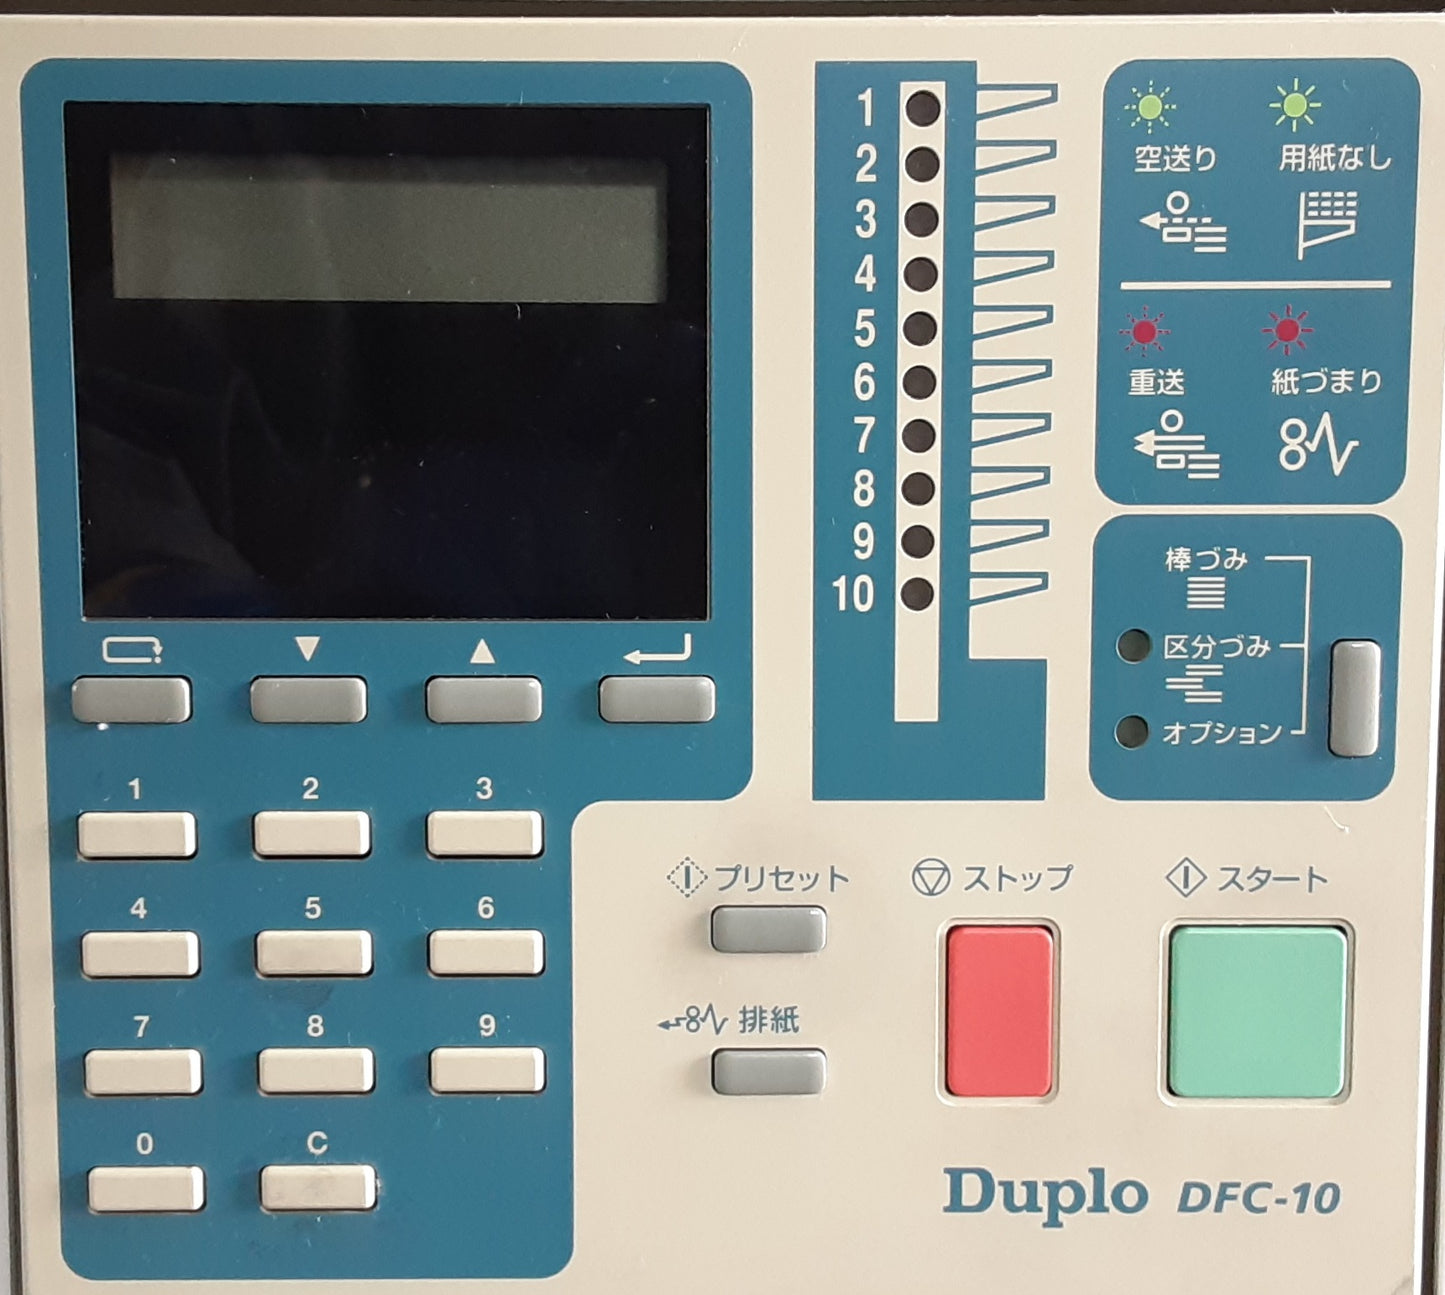 デュプロ(Duplo)製 コロ式 卓上丁合機 DFC-10 段数10段 A3サイズ対応 duplo1-dfc10-9028